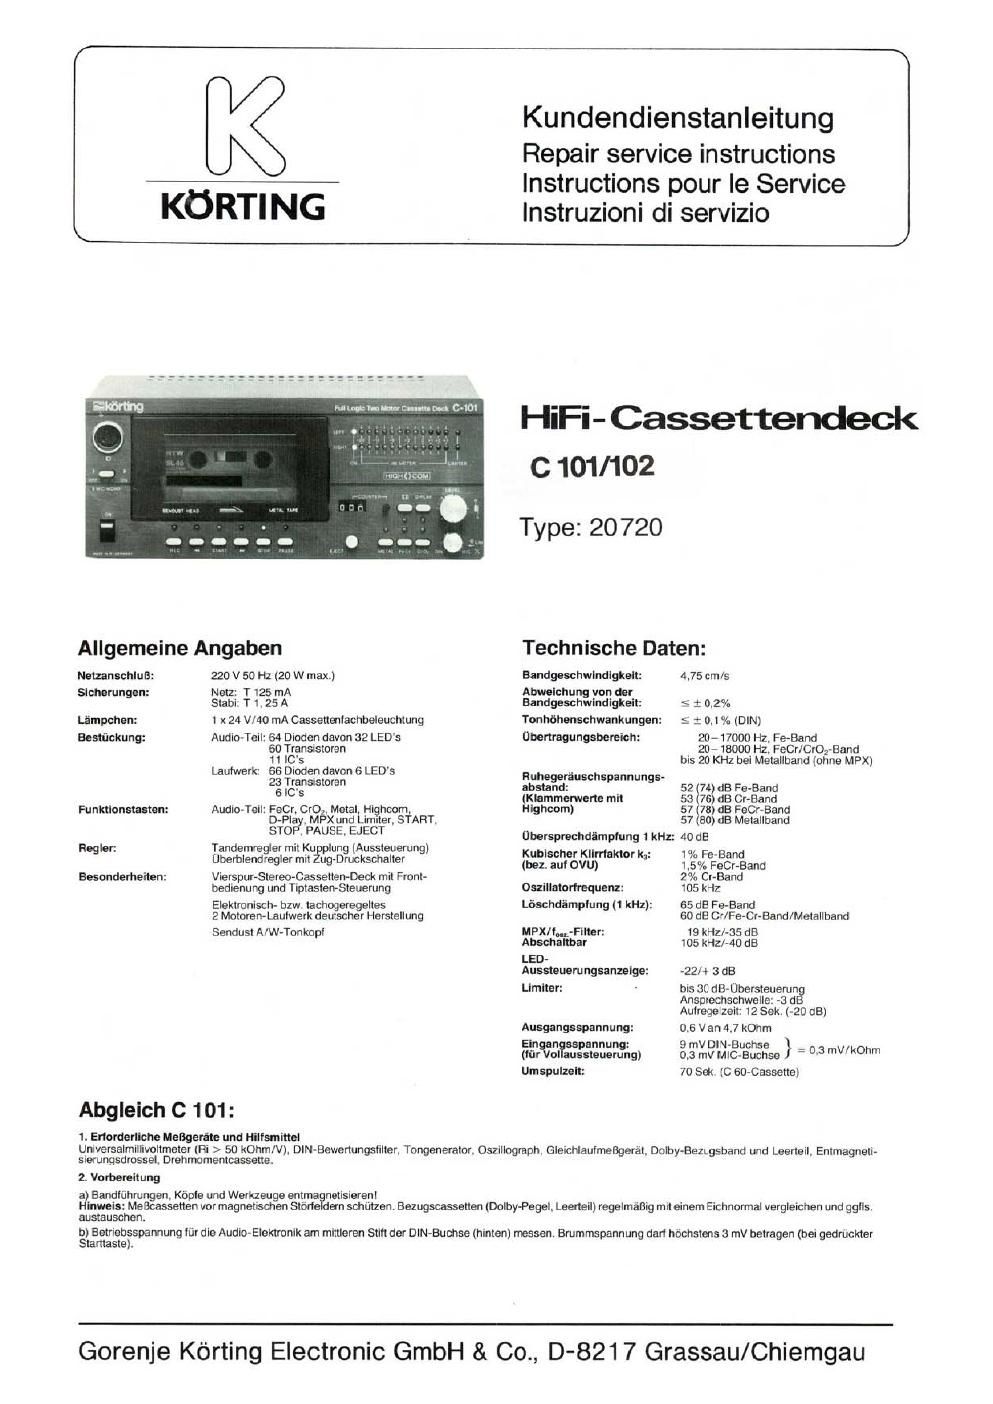 koerting c 101 c 102 service manual